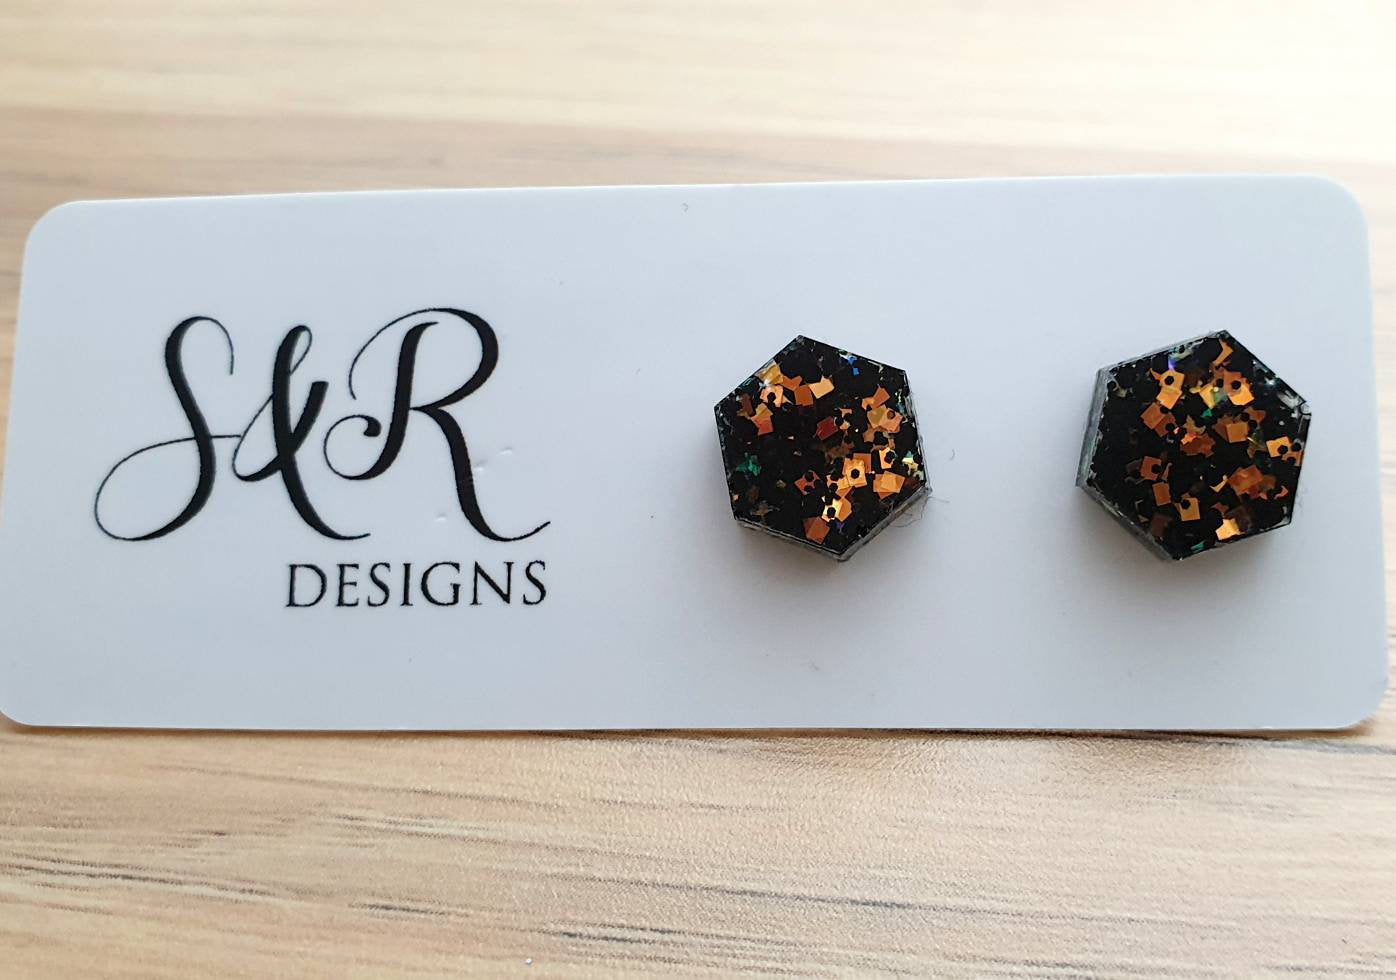 Hexagon Resin Stud Earrings, Rose Gold Black Glitter Earrings. Stainless Steel Stud Earrings. 10mm